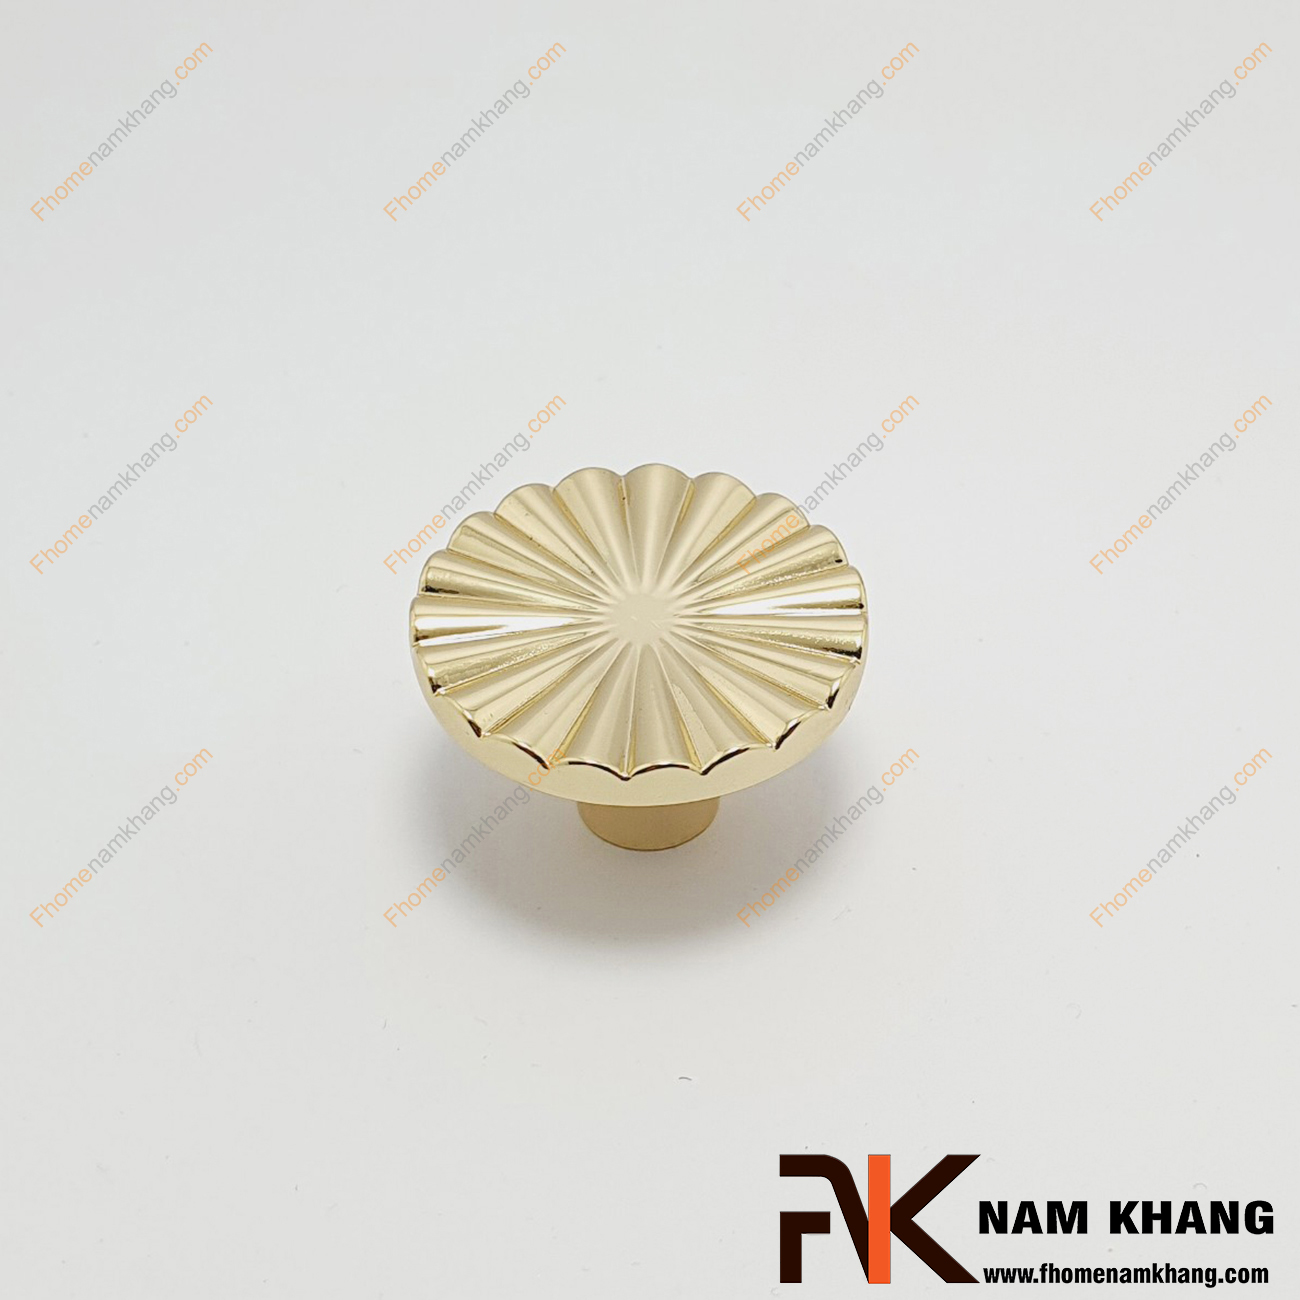 Núm cửa tủ dạng tròn hoa văn quạt đồng tâm vàng bóng NK286Q-V, thiết kế rất đặc trưng và mang đậm vẻ sang trọng cao cấp. 